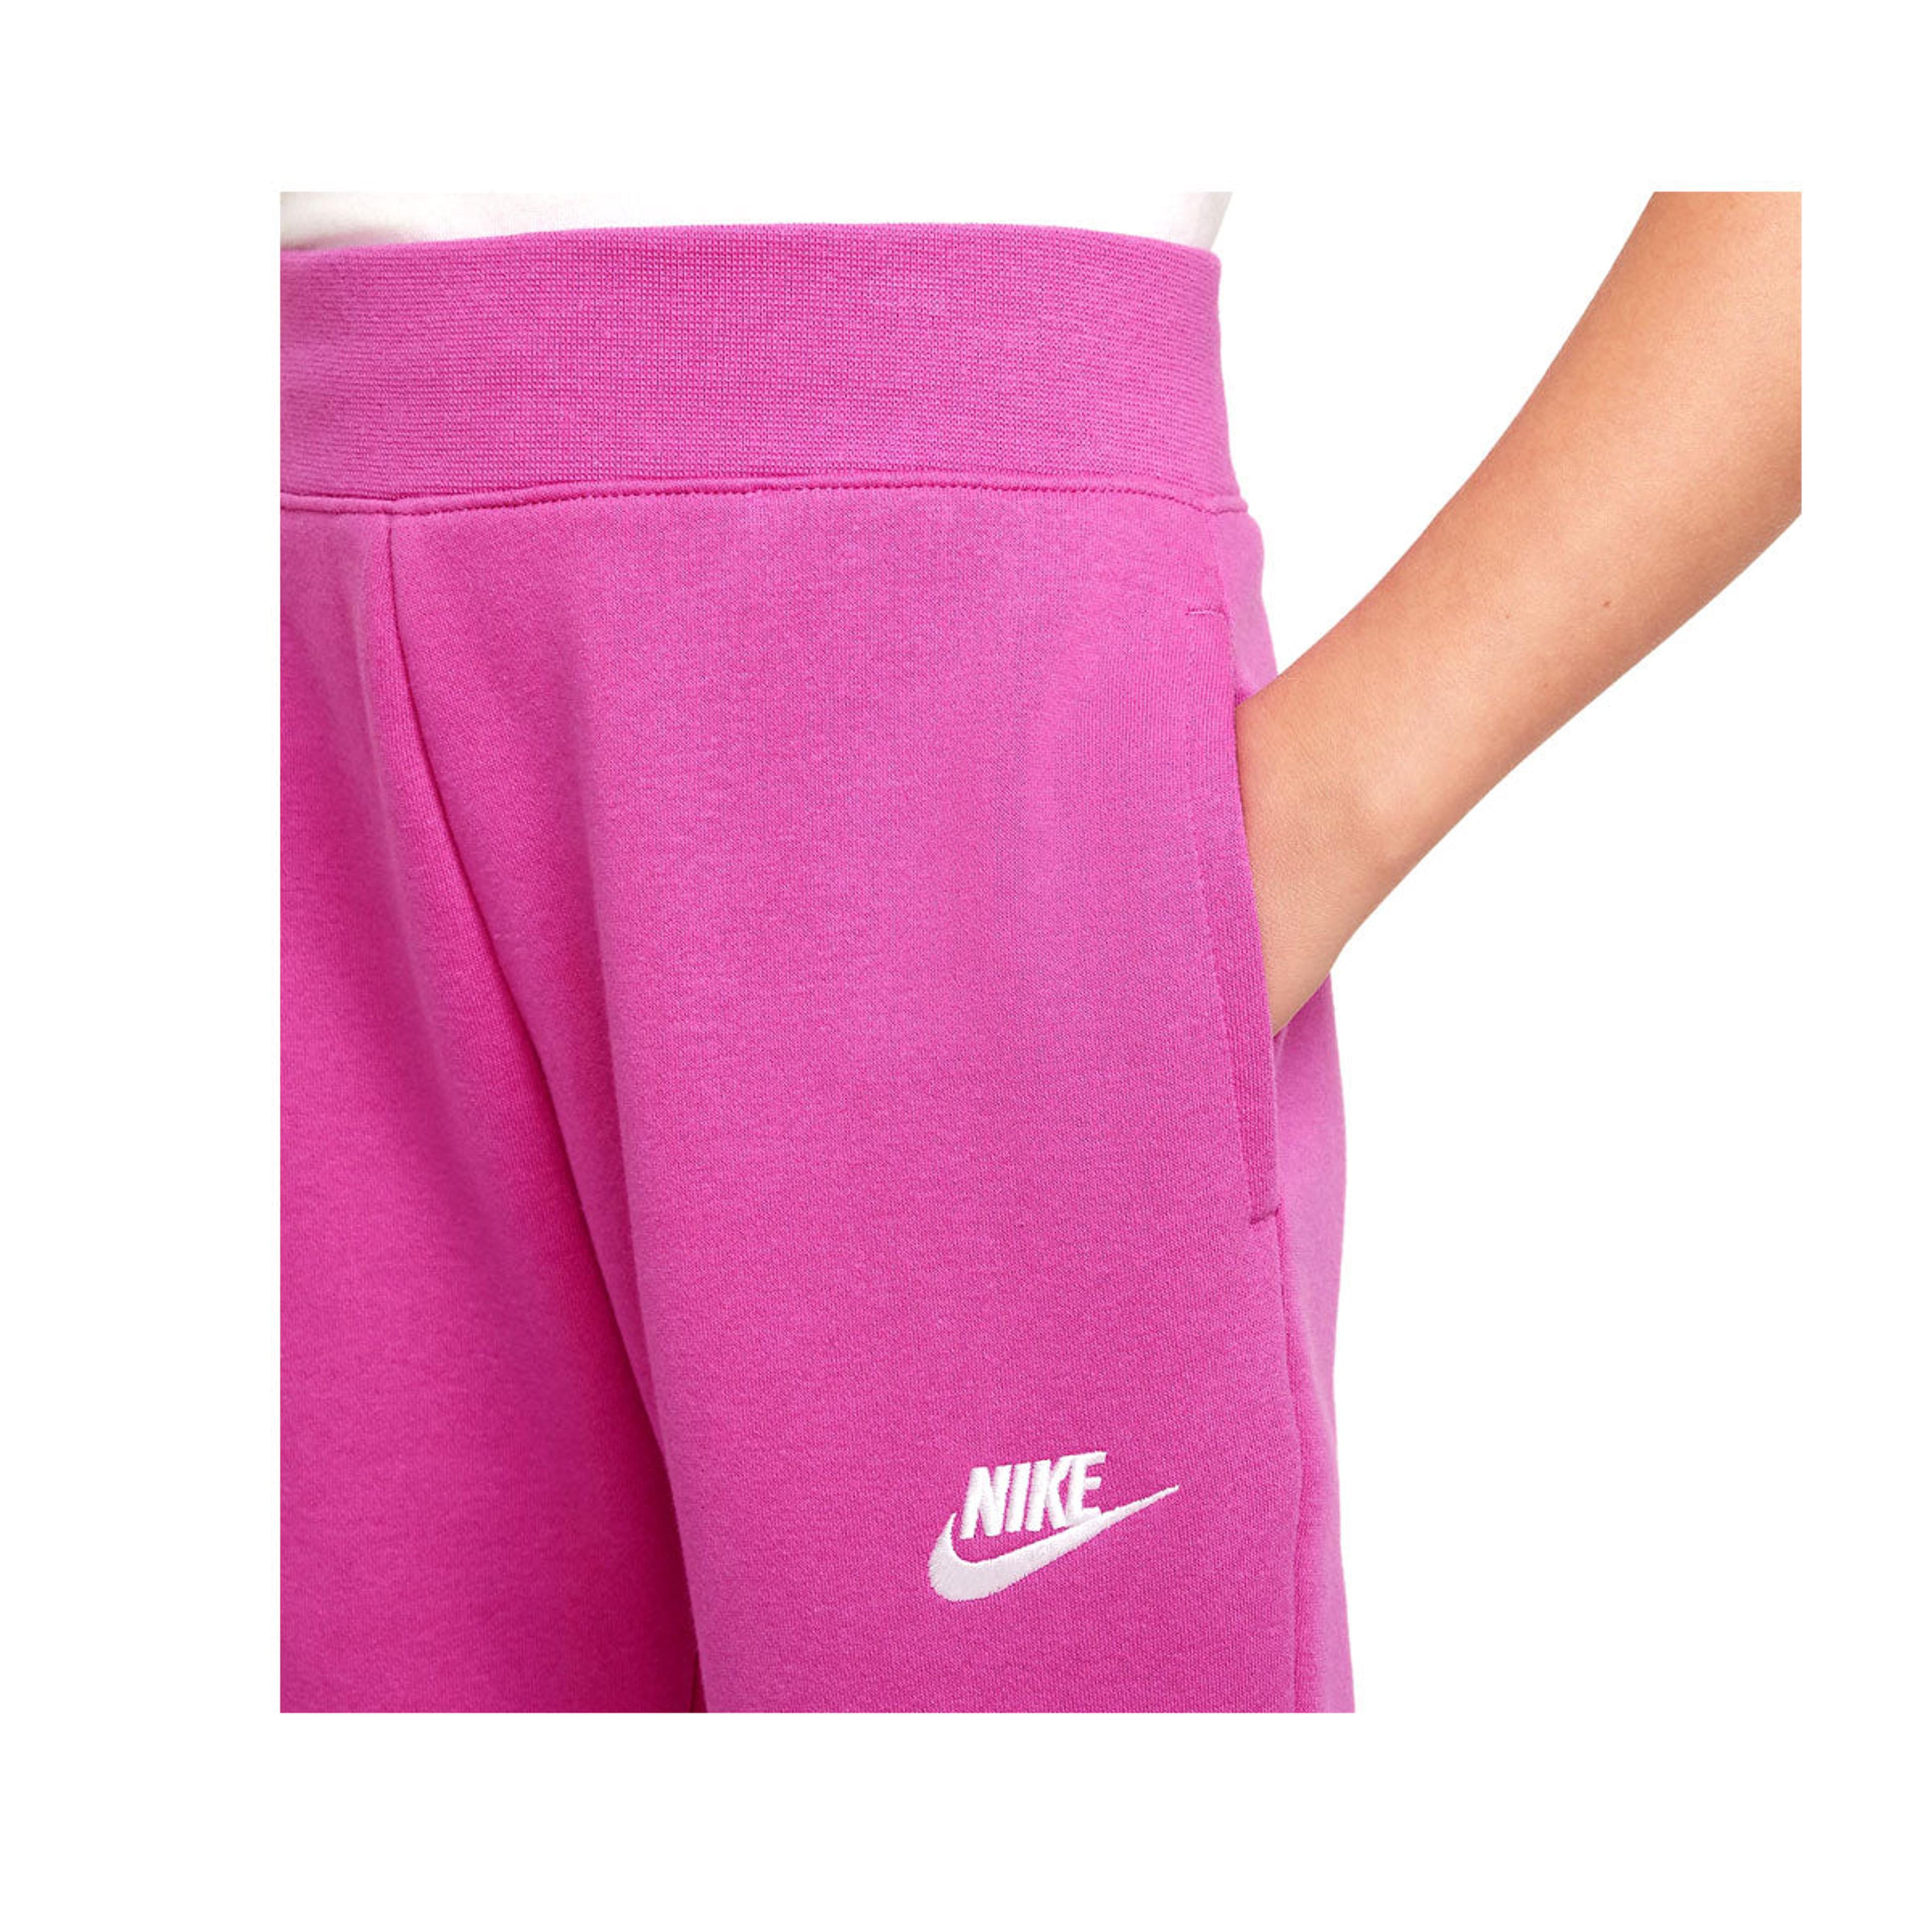 Alternate View 1 of Nike Girls' Sportswear Club Fleece Jogger Pants